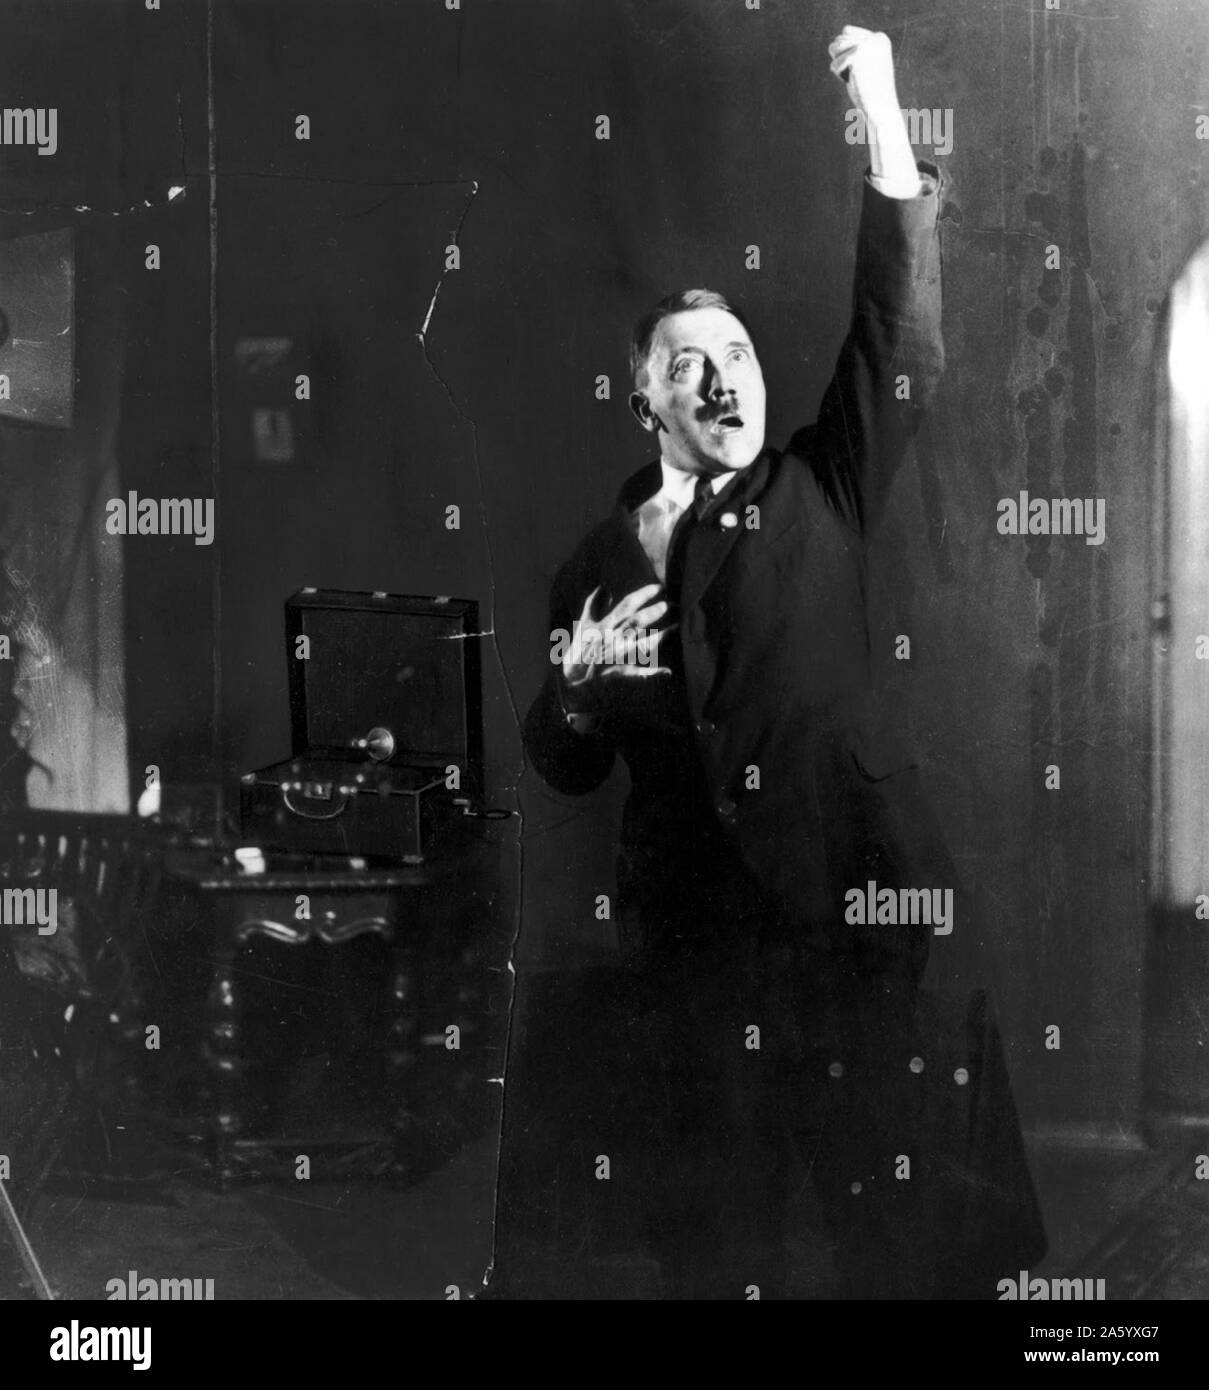 Deutschen Nazi-Führer Adolf Hitler (1889-1945) Österreich geborene deutsche Politiker, der Führer der NSDAP, eine Rede vor dem Spiegel geprobt wurde. Datiert 1933 Stockfoto